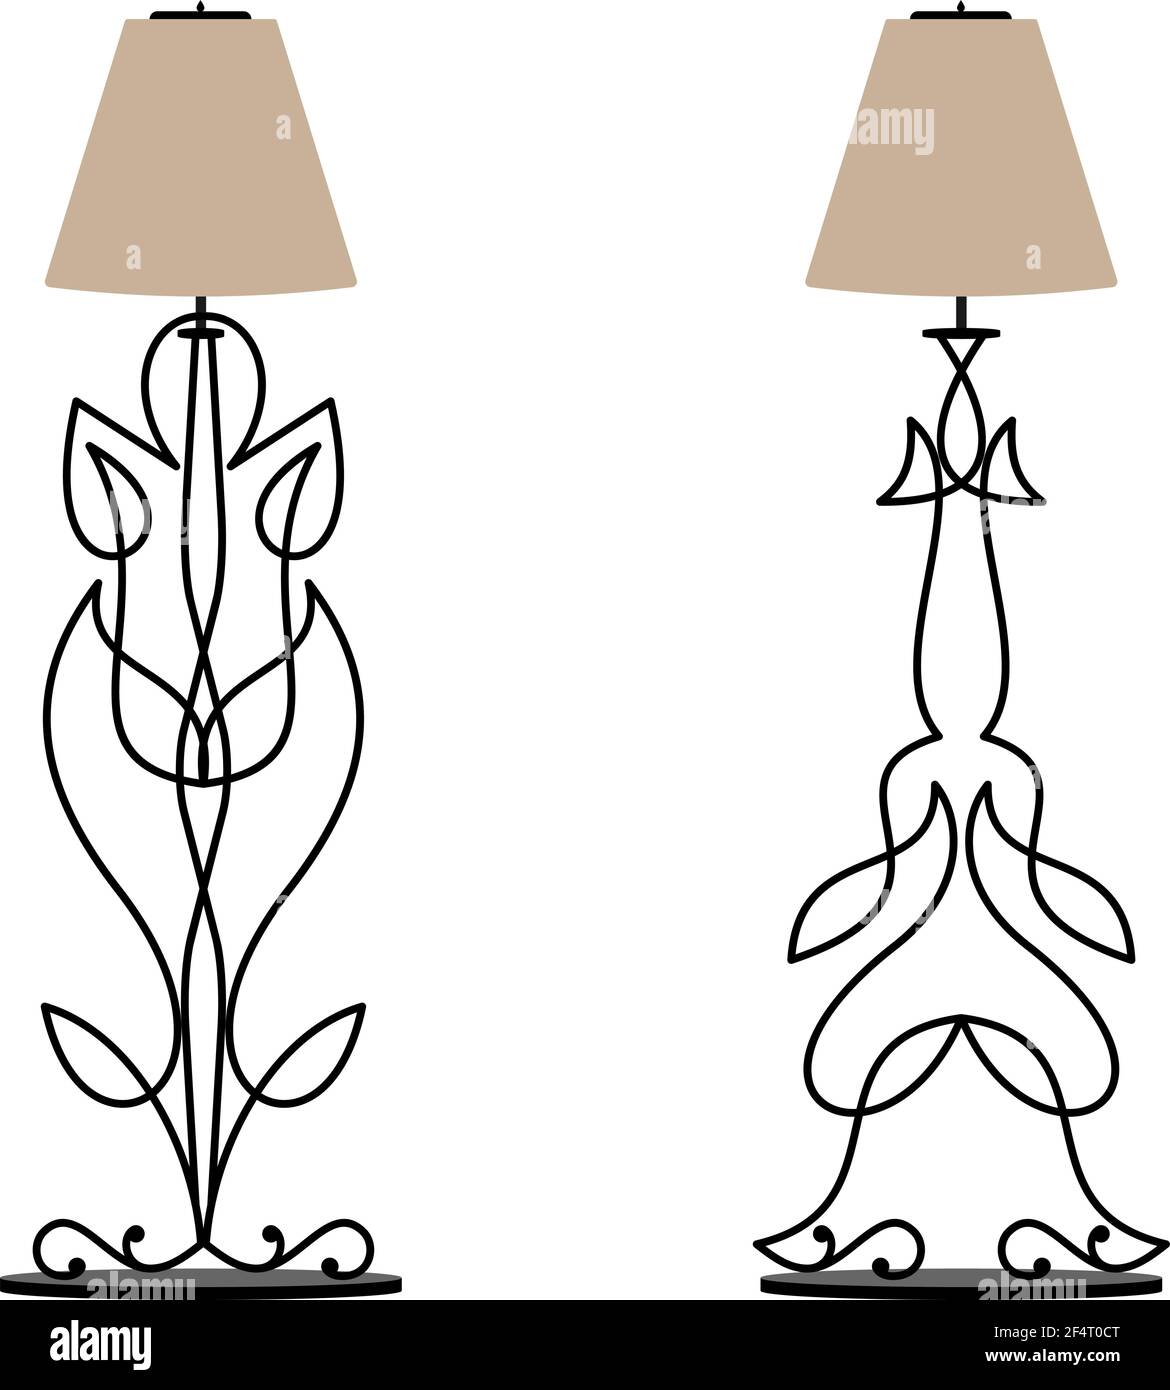 Illustration de la conception de la lampe sur pied de table en fer forgé  Image Vectorielle Stock - Alamy